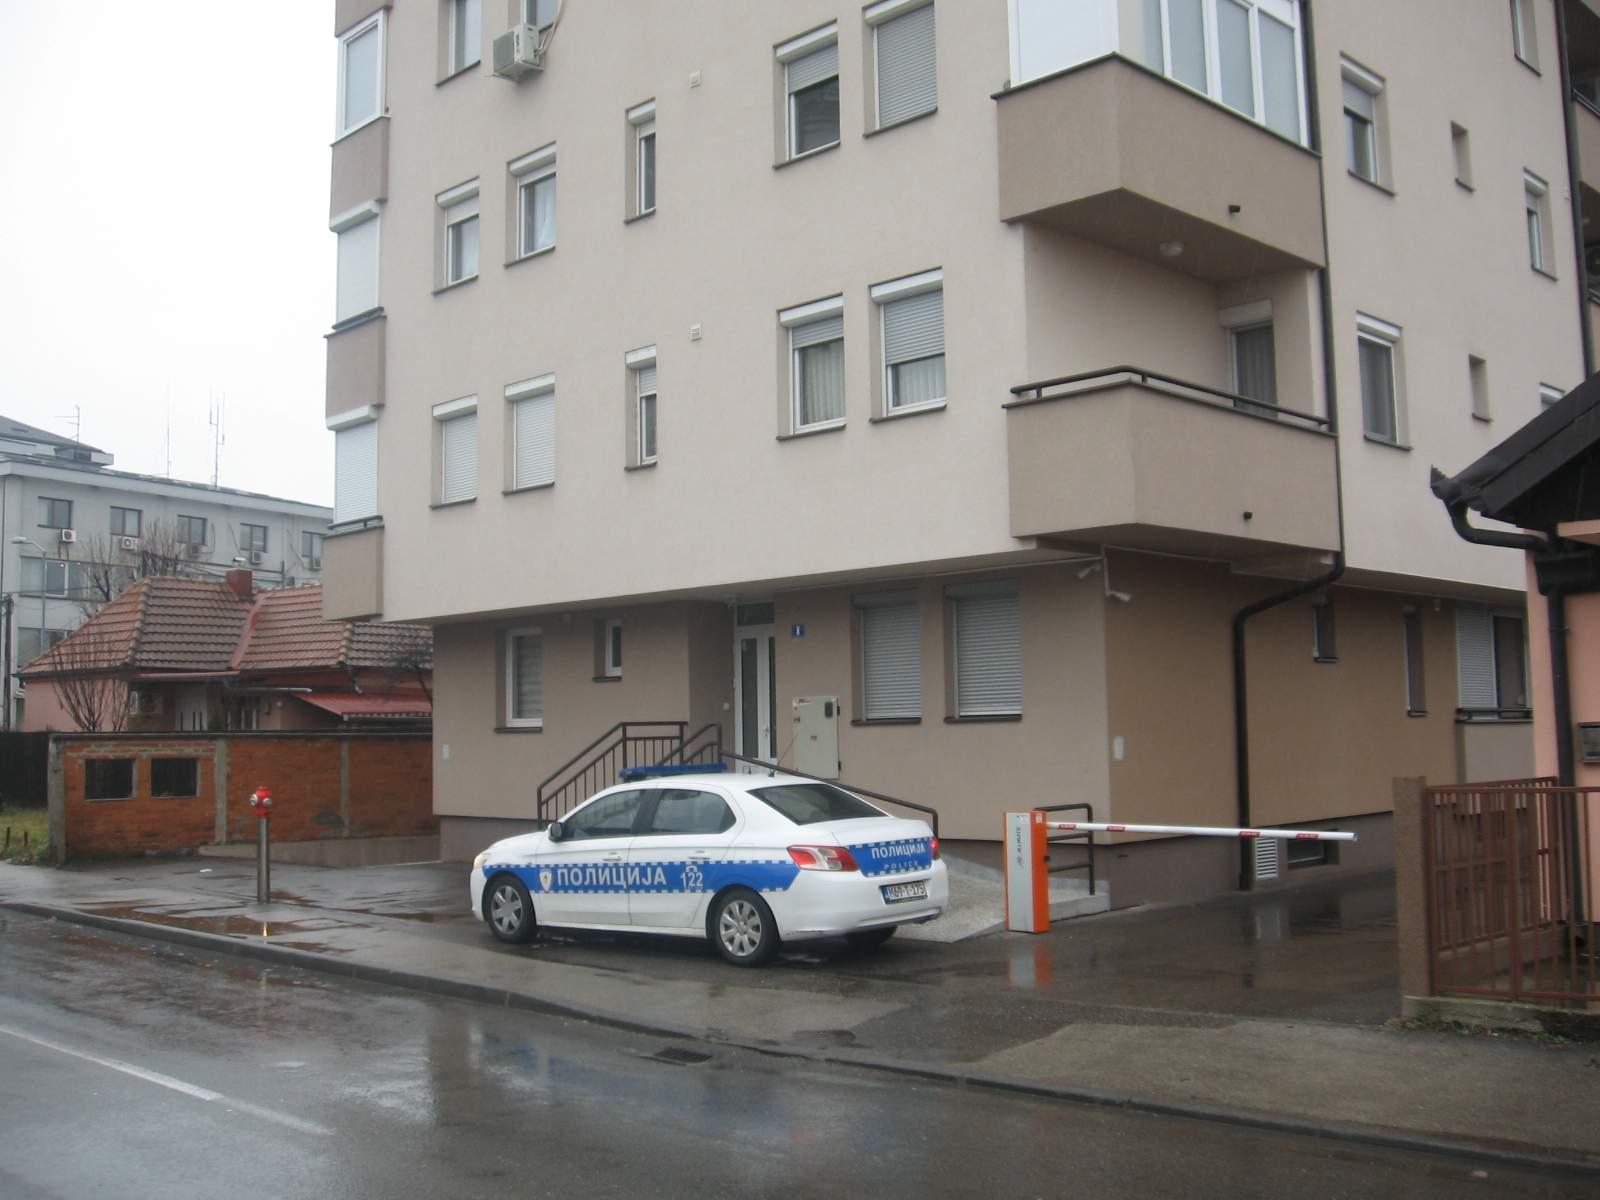 Policija ispred zgrade u kojoj živi starica - Avaz